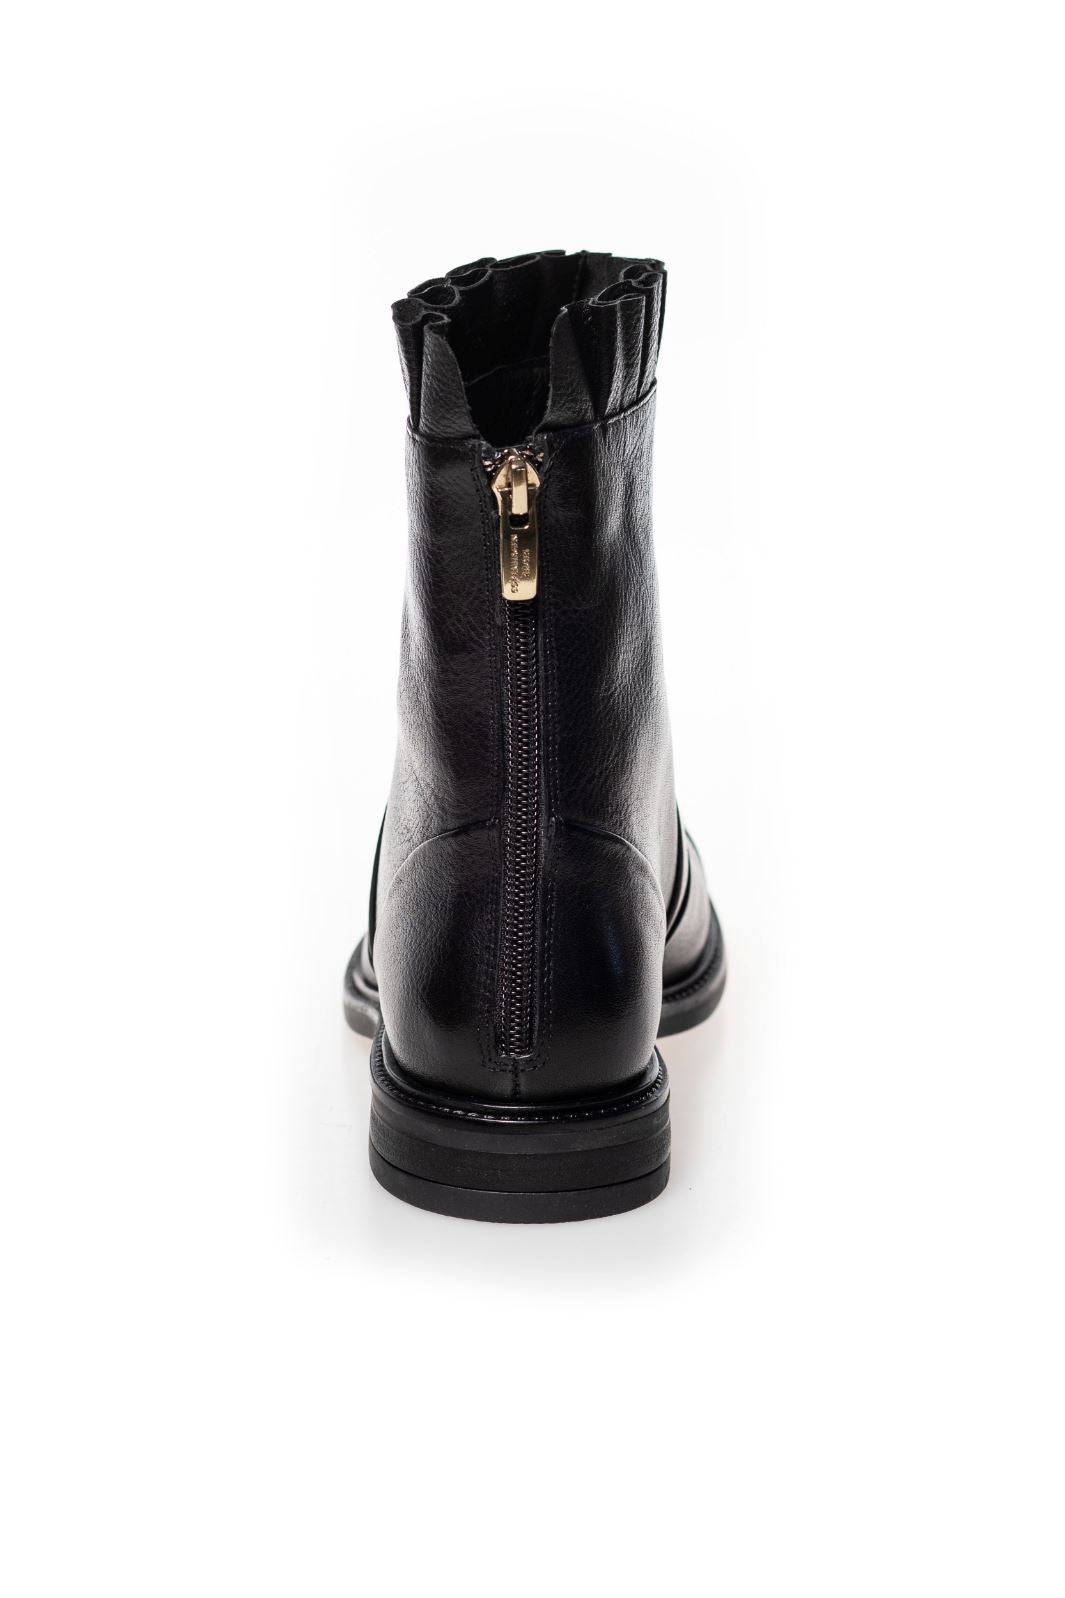 Copenhagen Shoes - Margaret - 00010 Black W/Patent Toe Støvler 